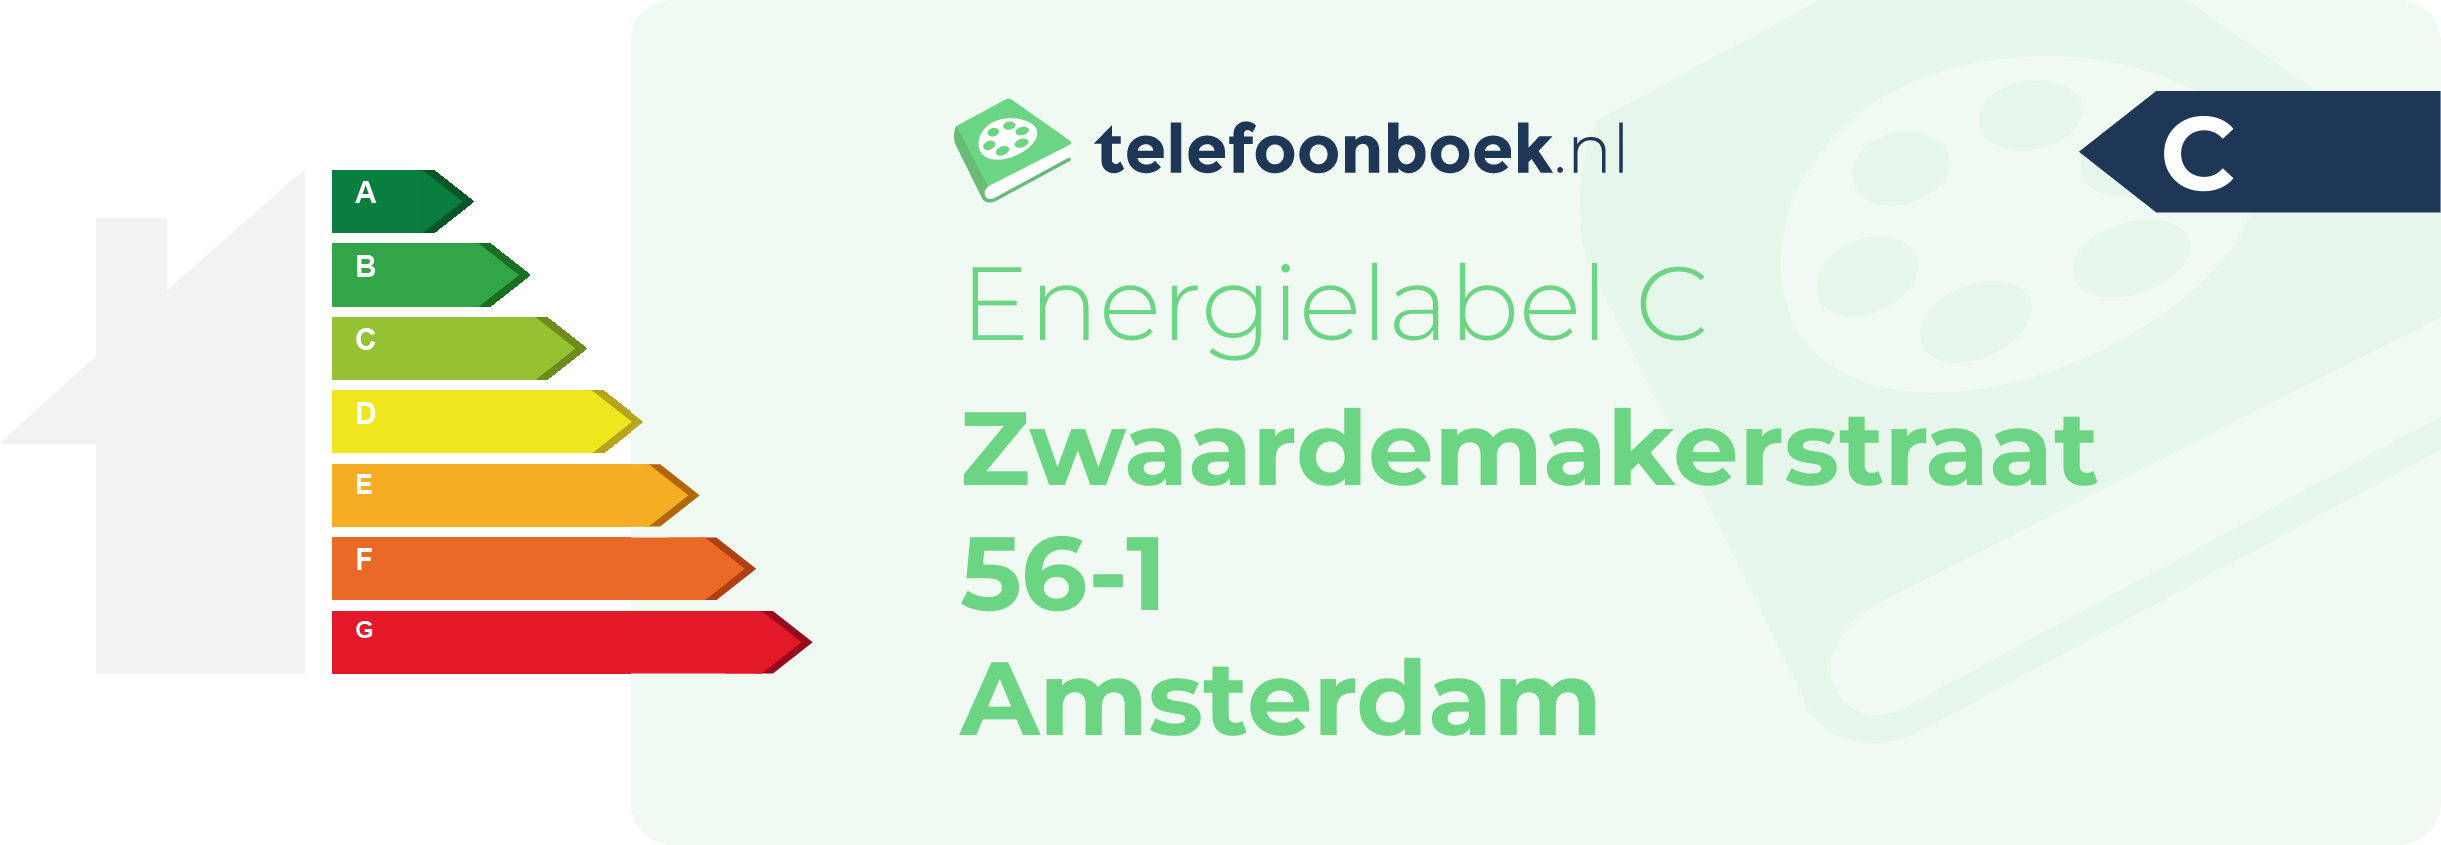 Energielabel Zwaardemakerstraat 56-1 Amsterdam